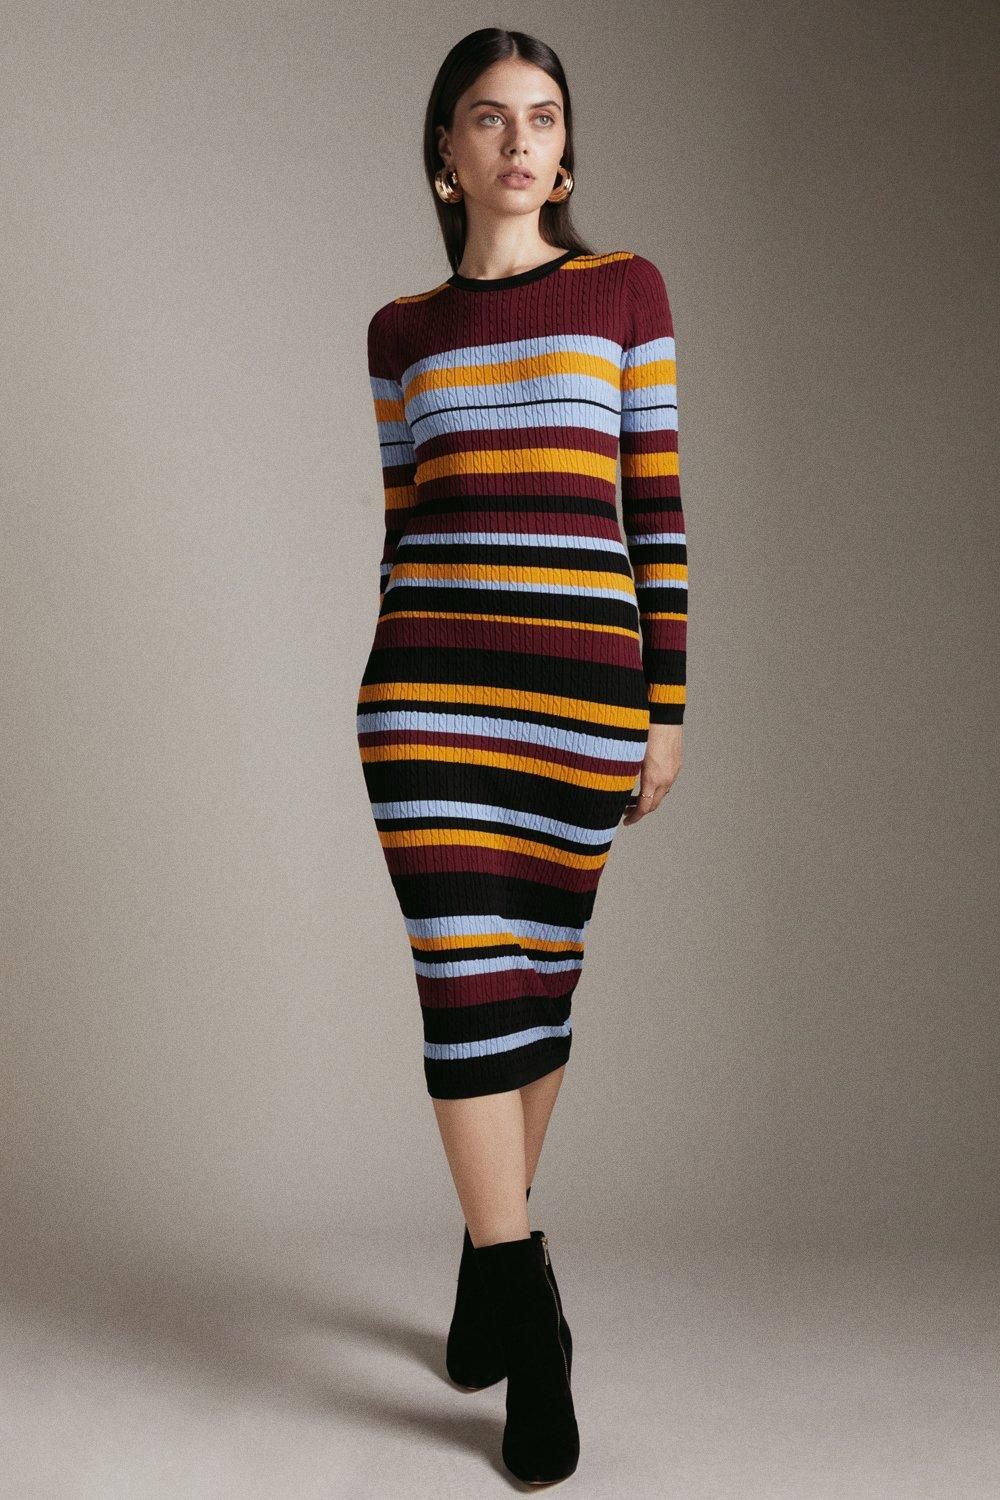 Light Weight All Over Cable Striped Dress | Karen Millen UK & IE